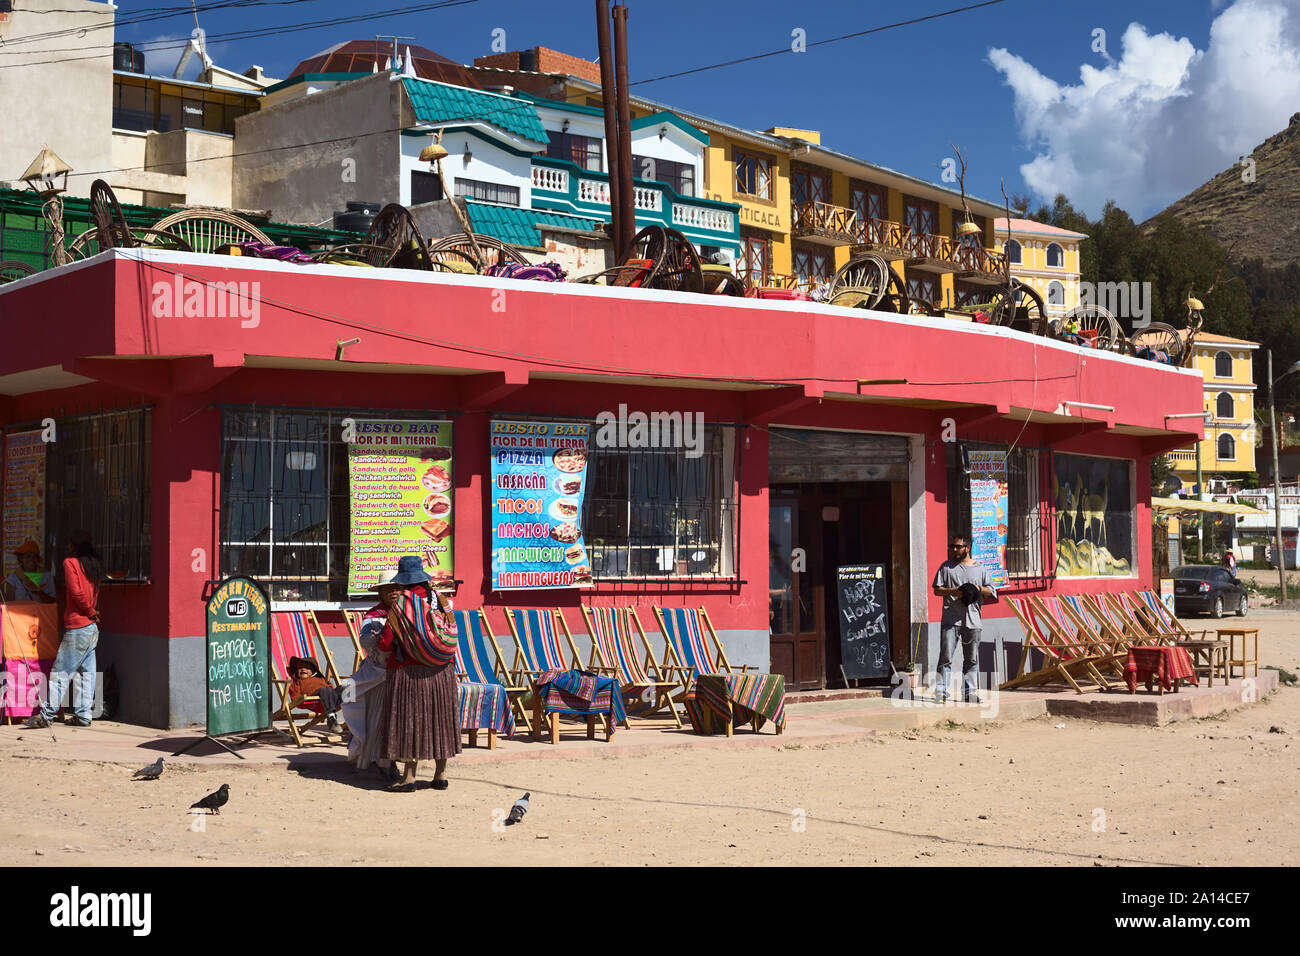 COPACABANA, BOLIVIA - OCTOBER 19, 2014: Unidentified people standing in front of the resto bar Flor de Mi Tierra in Copacabana, Bolivia Stock Photo